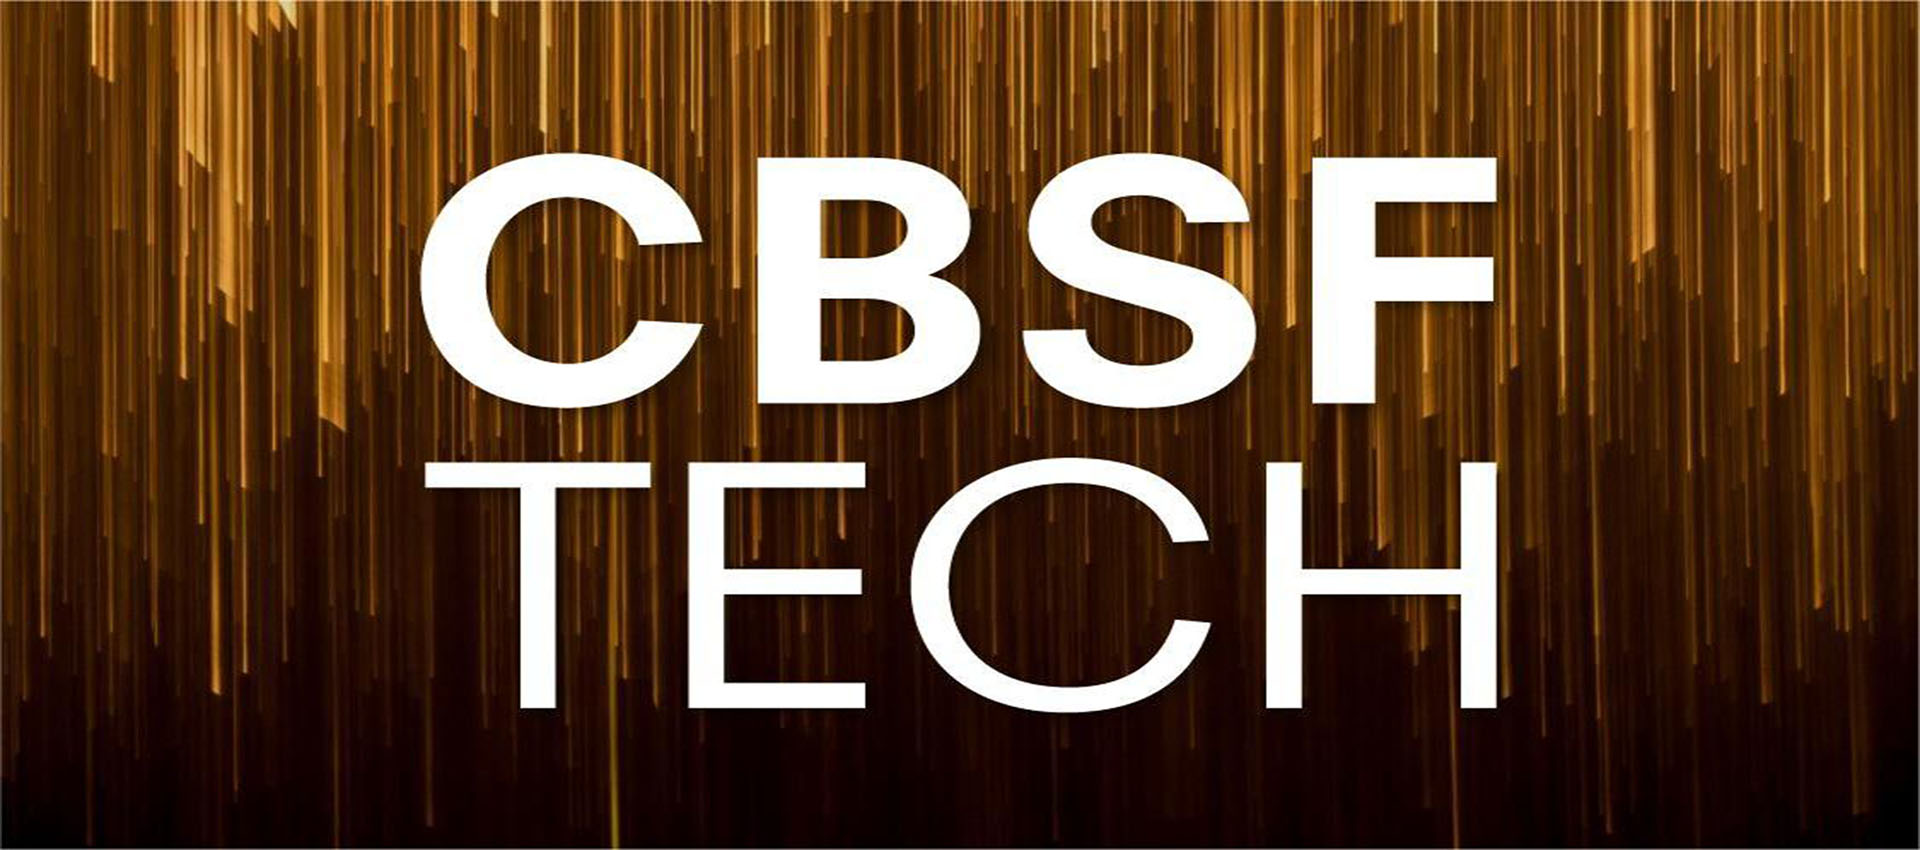 8868体育官方平台xR/VP虚拟拍摄CBSF技术